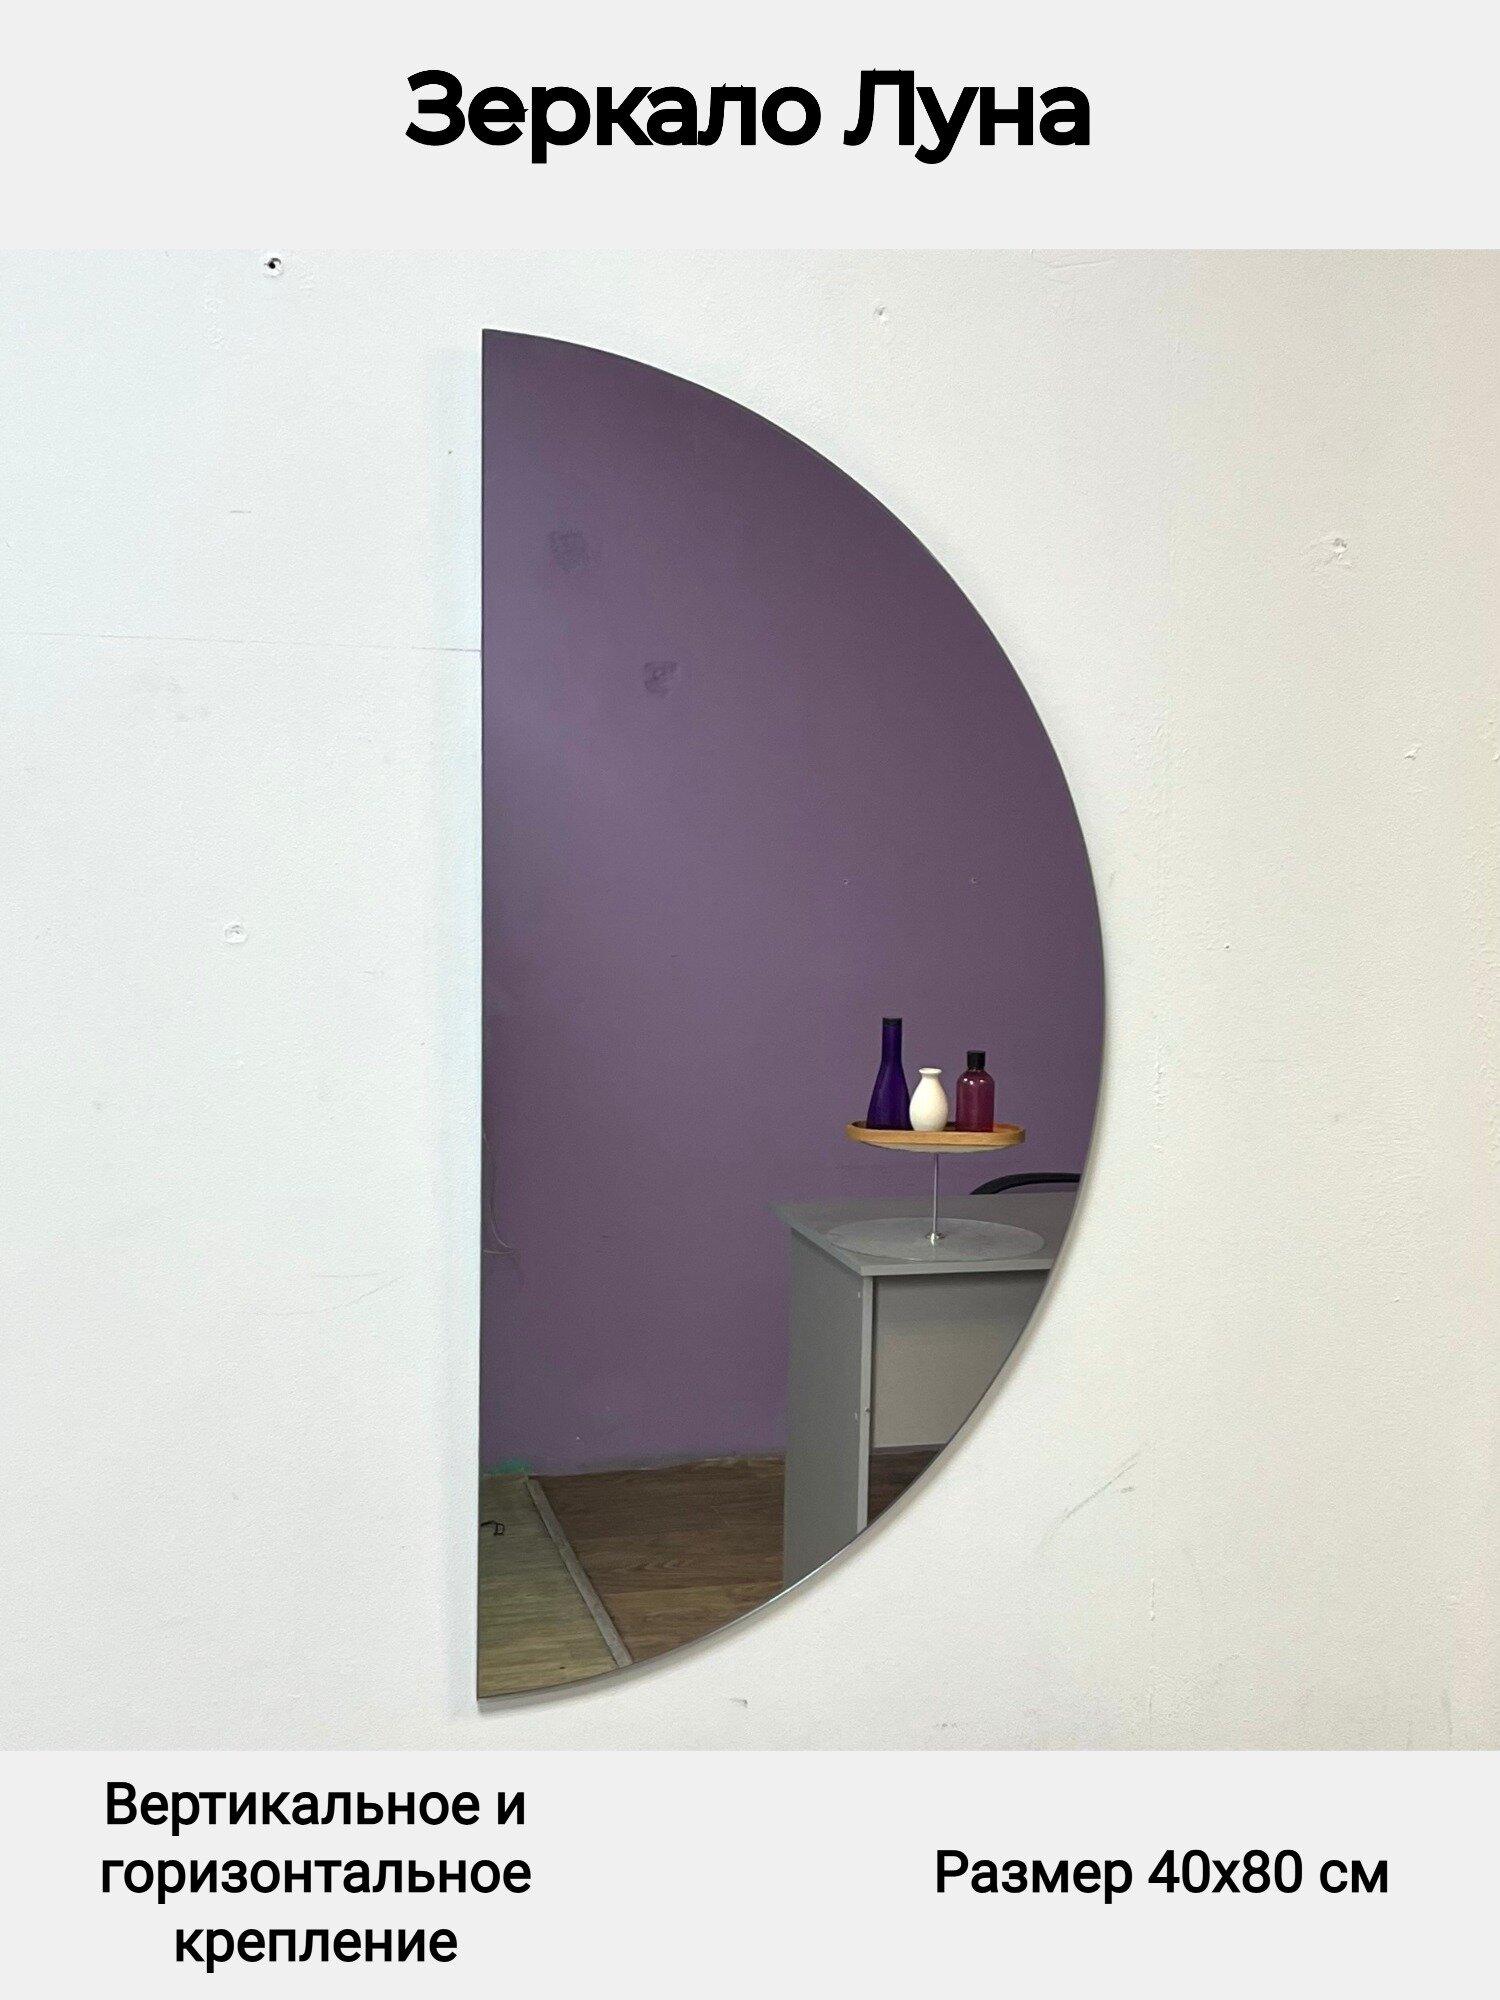 Зеркало для ванной полукруглое, 4 типа крепления, Луна Briola, 40х80 см